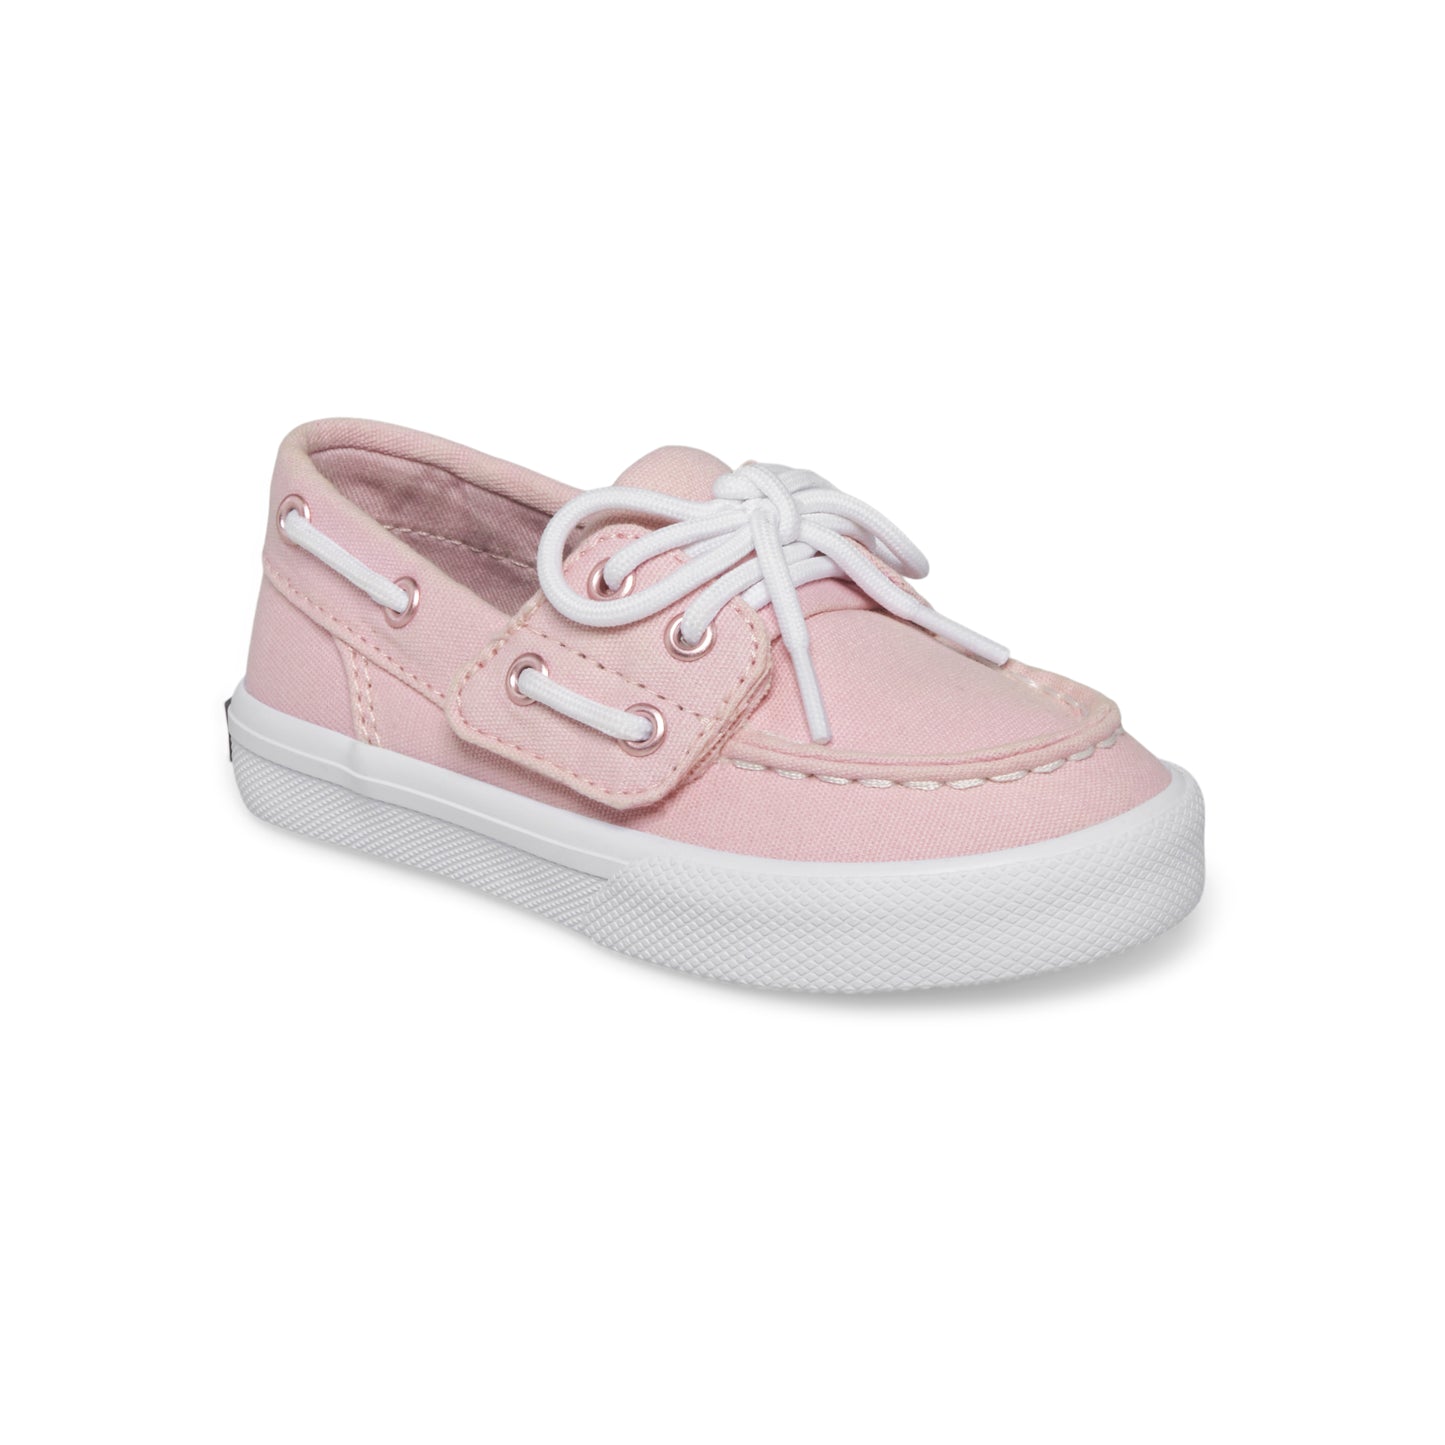 bahama-jr-boat-shoe-bigkid-pink__Pink_1